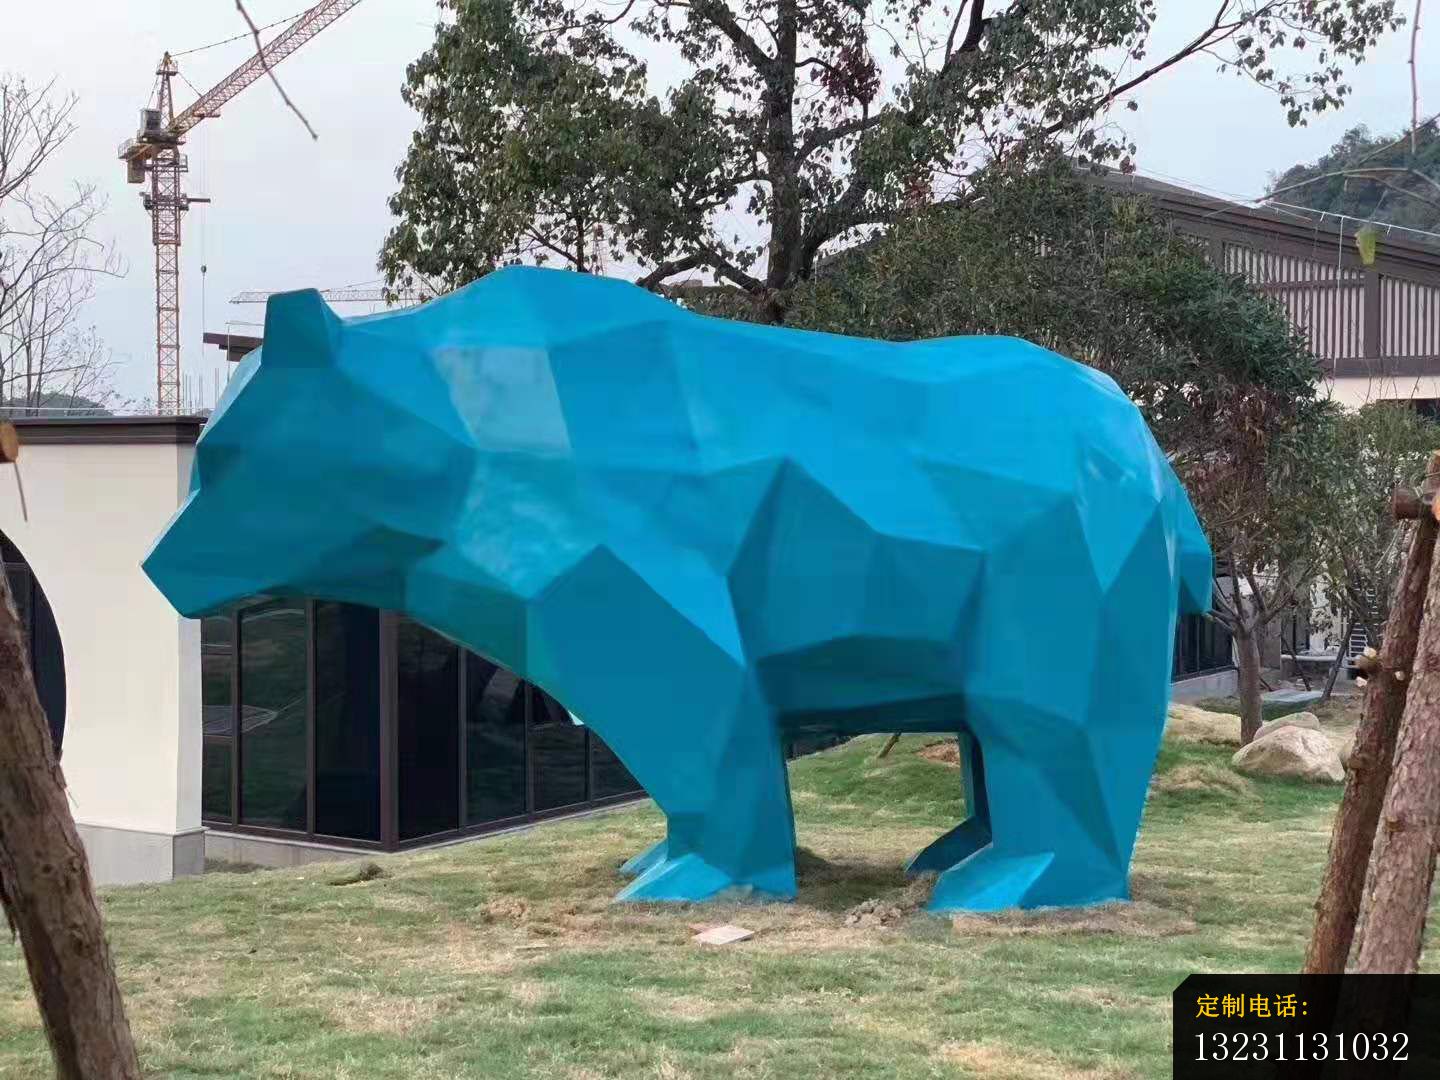 玻璃钢大型几何熊雕塑公园景观雕塑 (1)_1440*1080